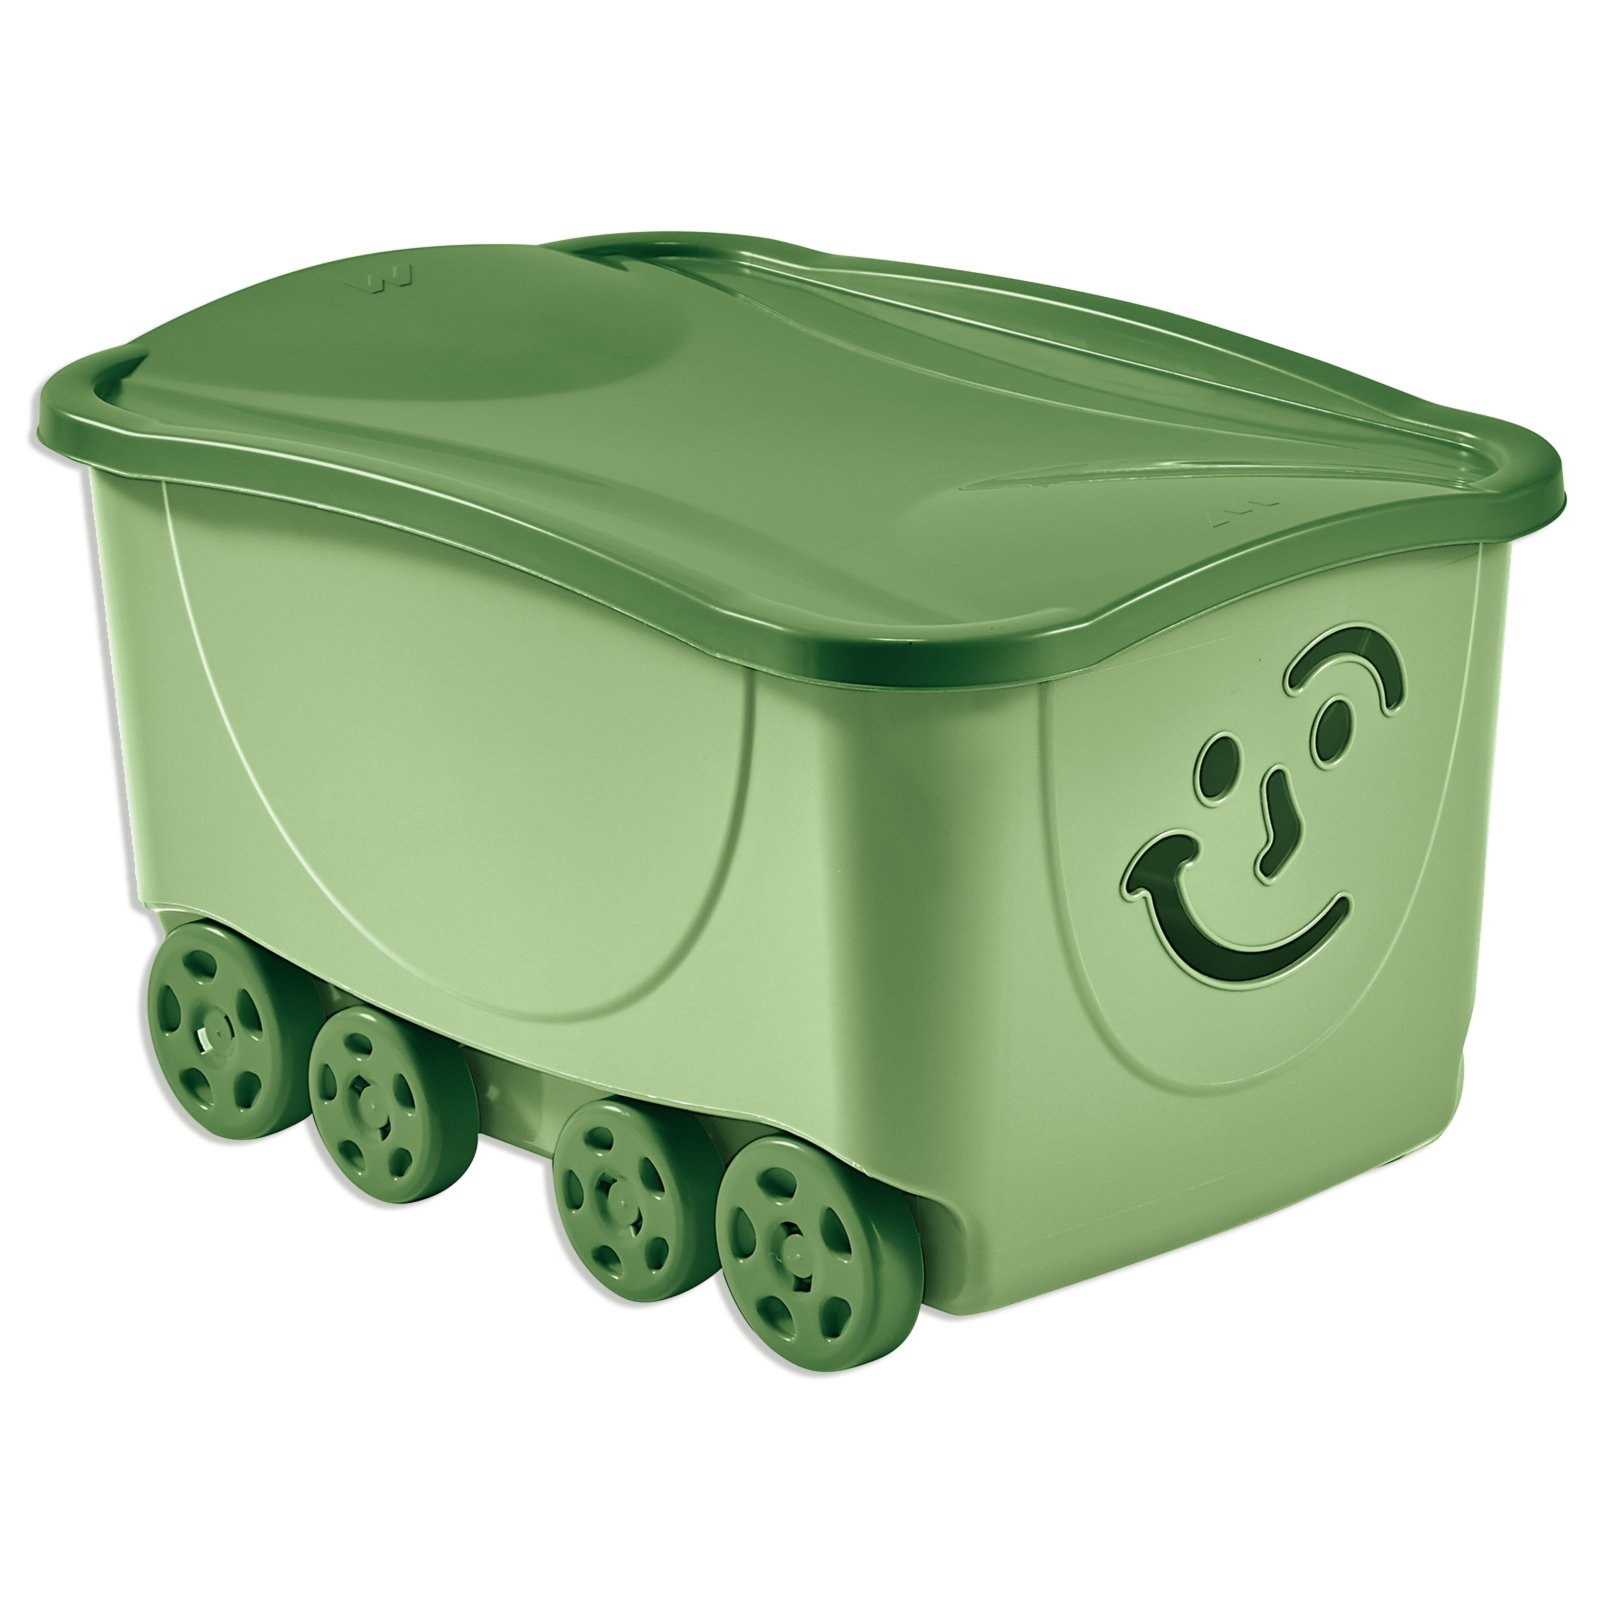 Rollbox - pastell grün - mit Deckel | Online bei ROLLER kaufen